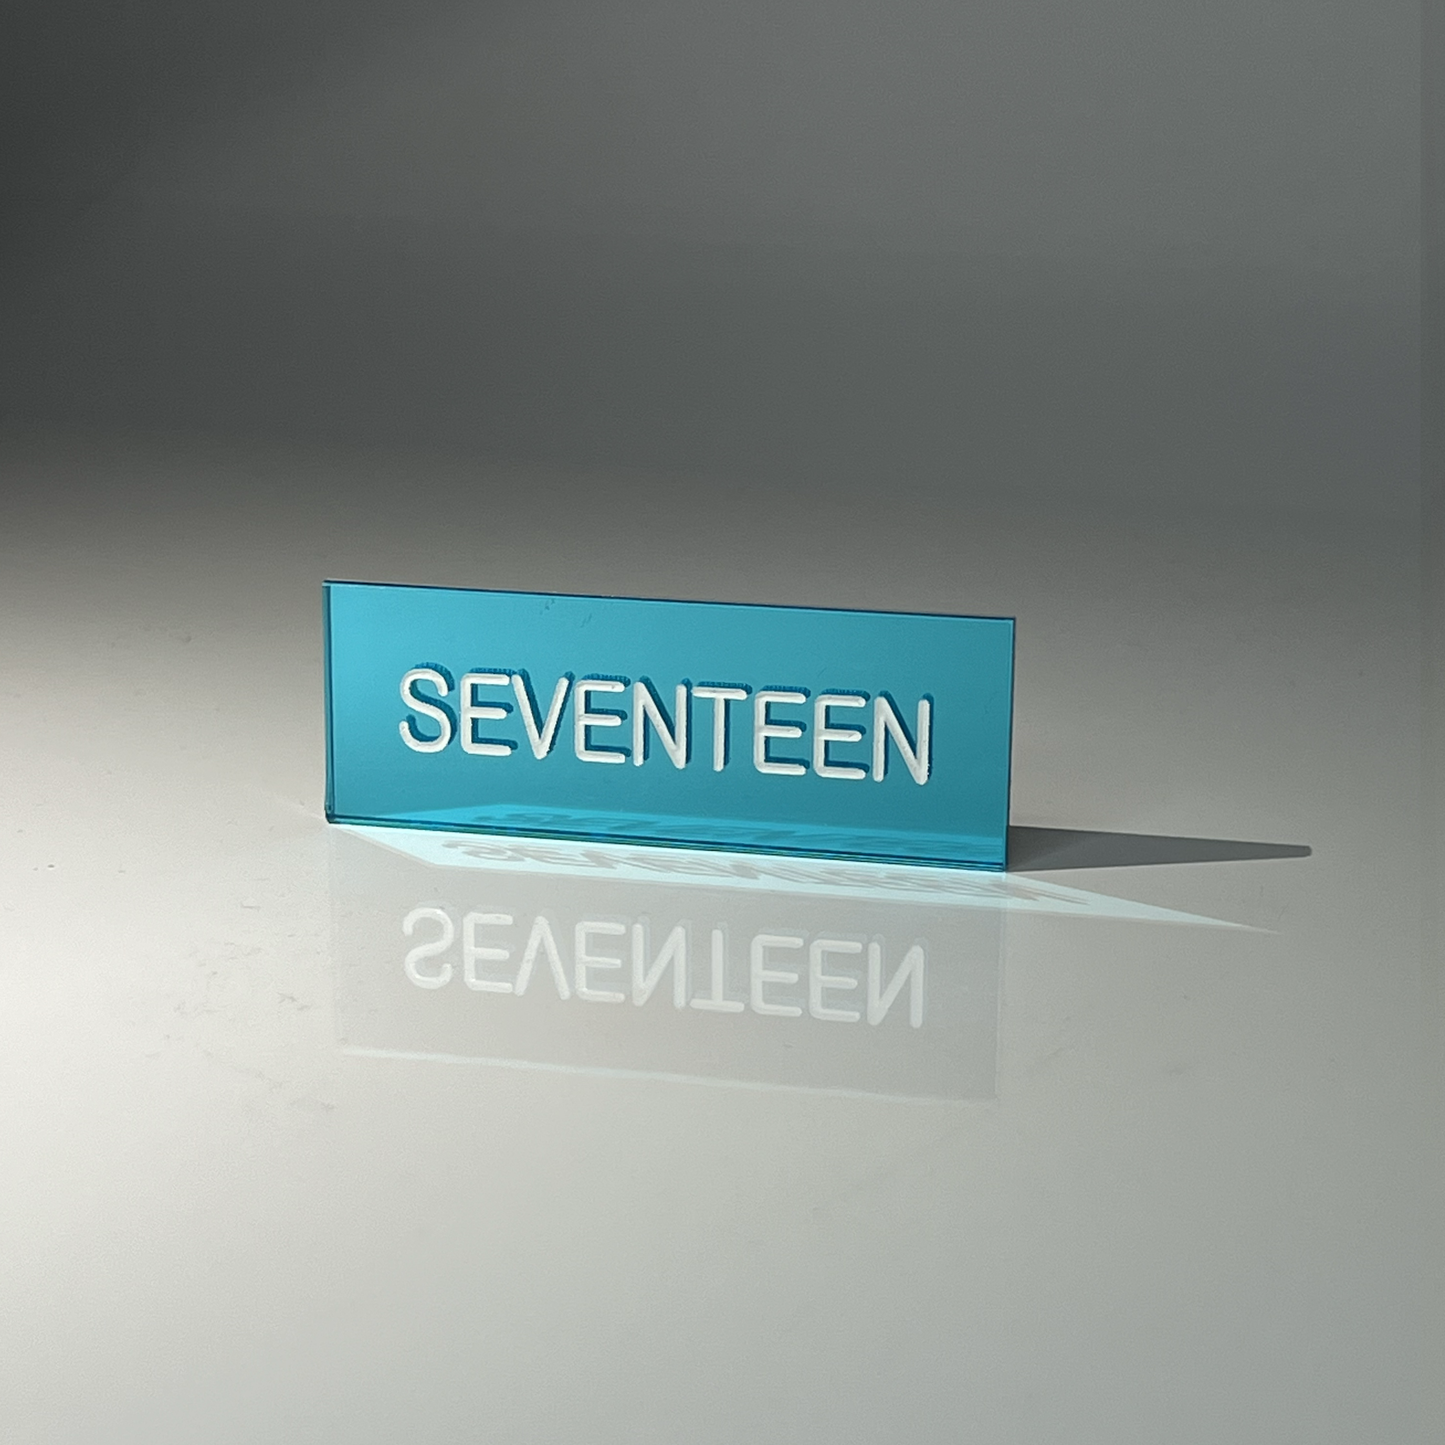 Seventeen Name Badge